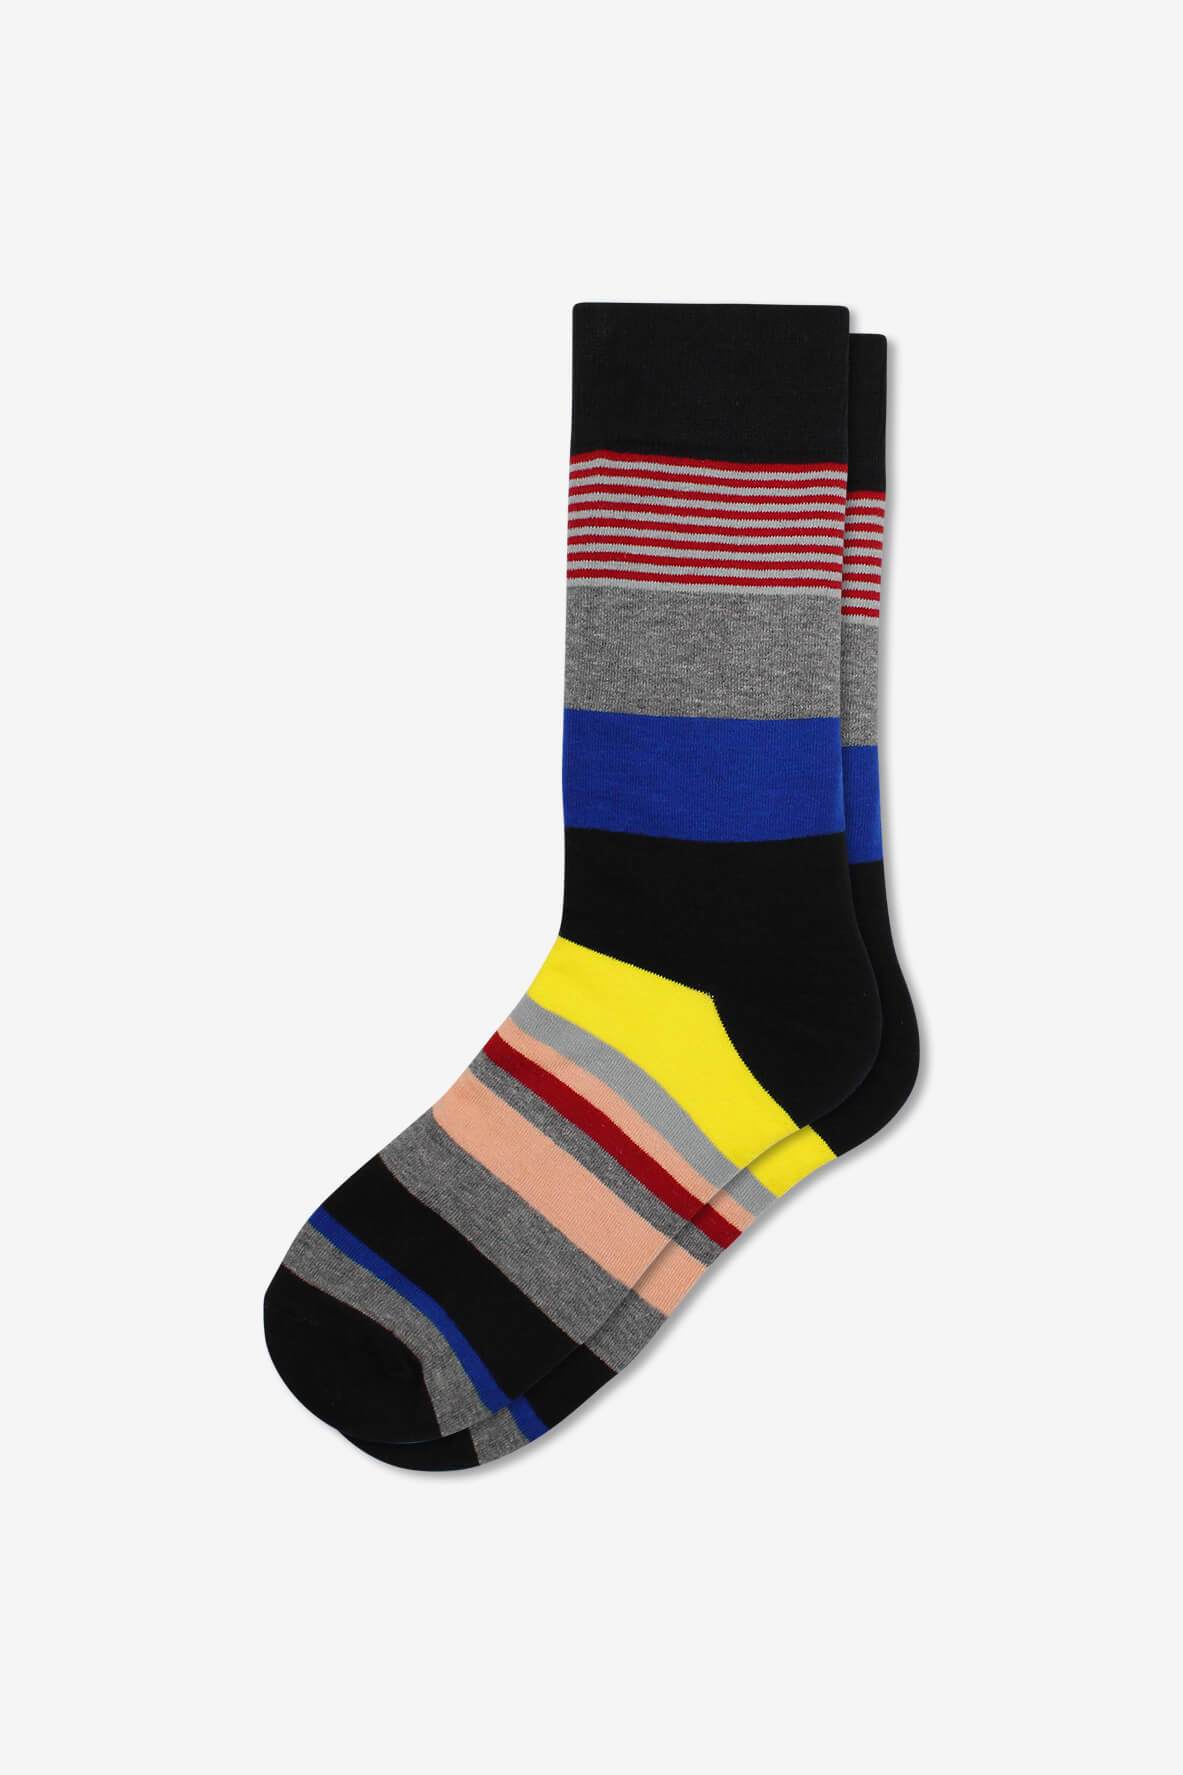 Socks IMG_5365, socks, GoTie